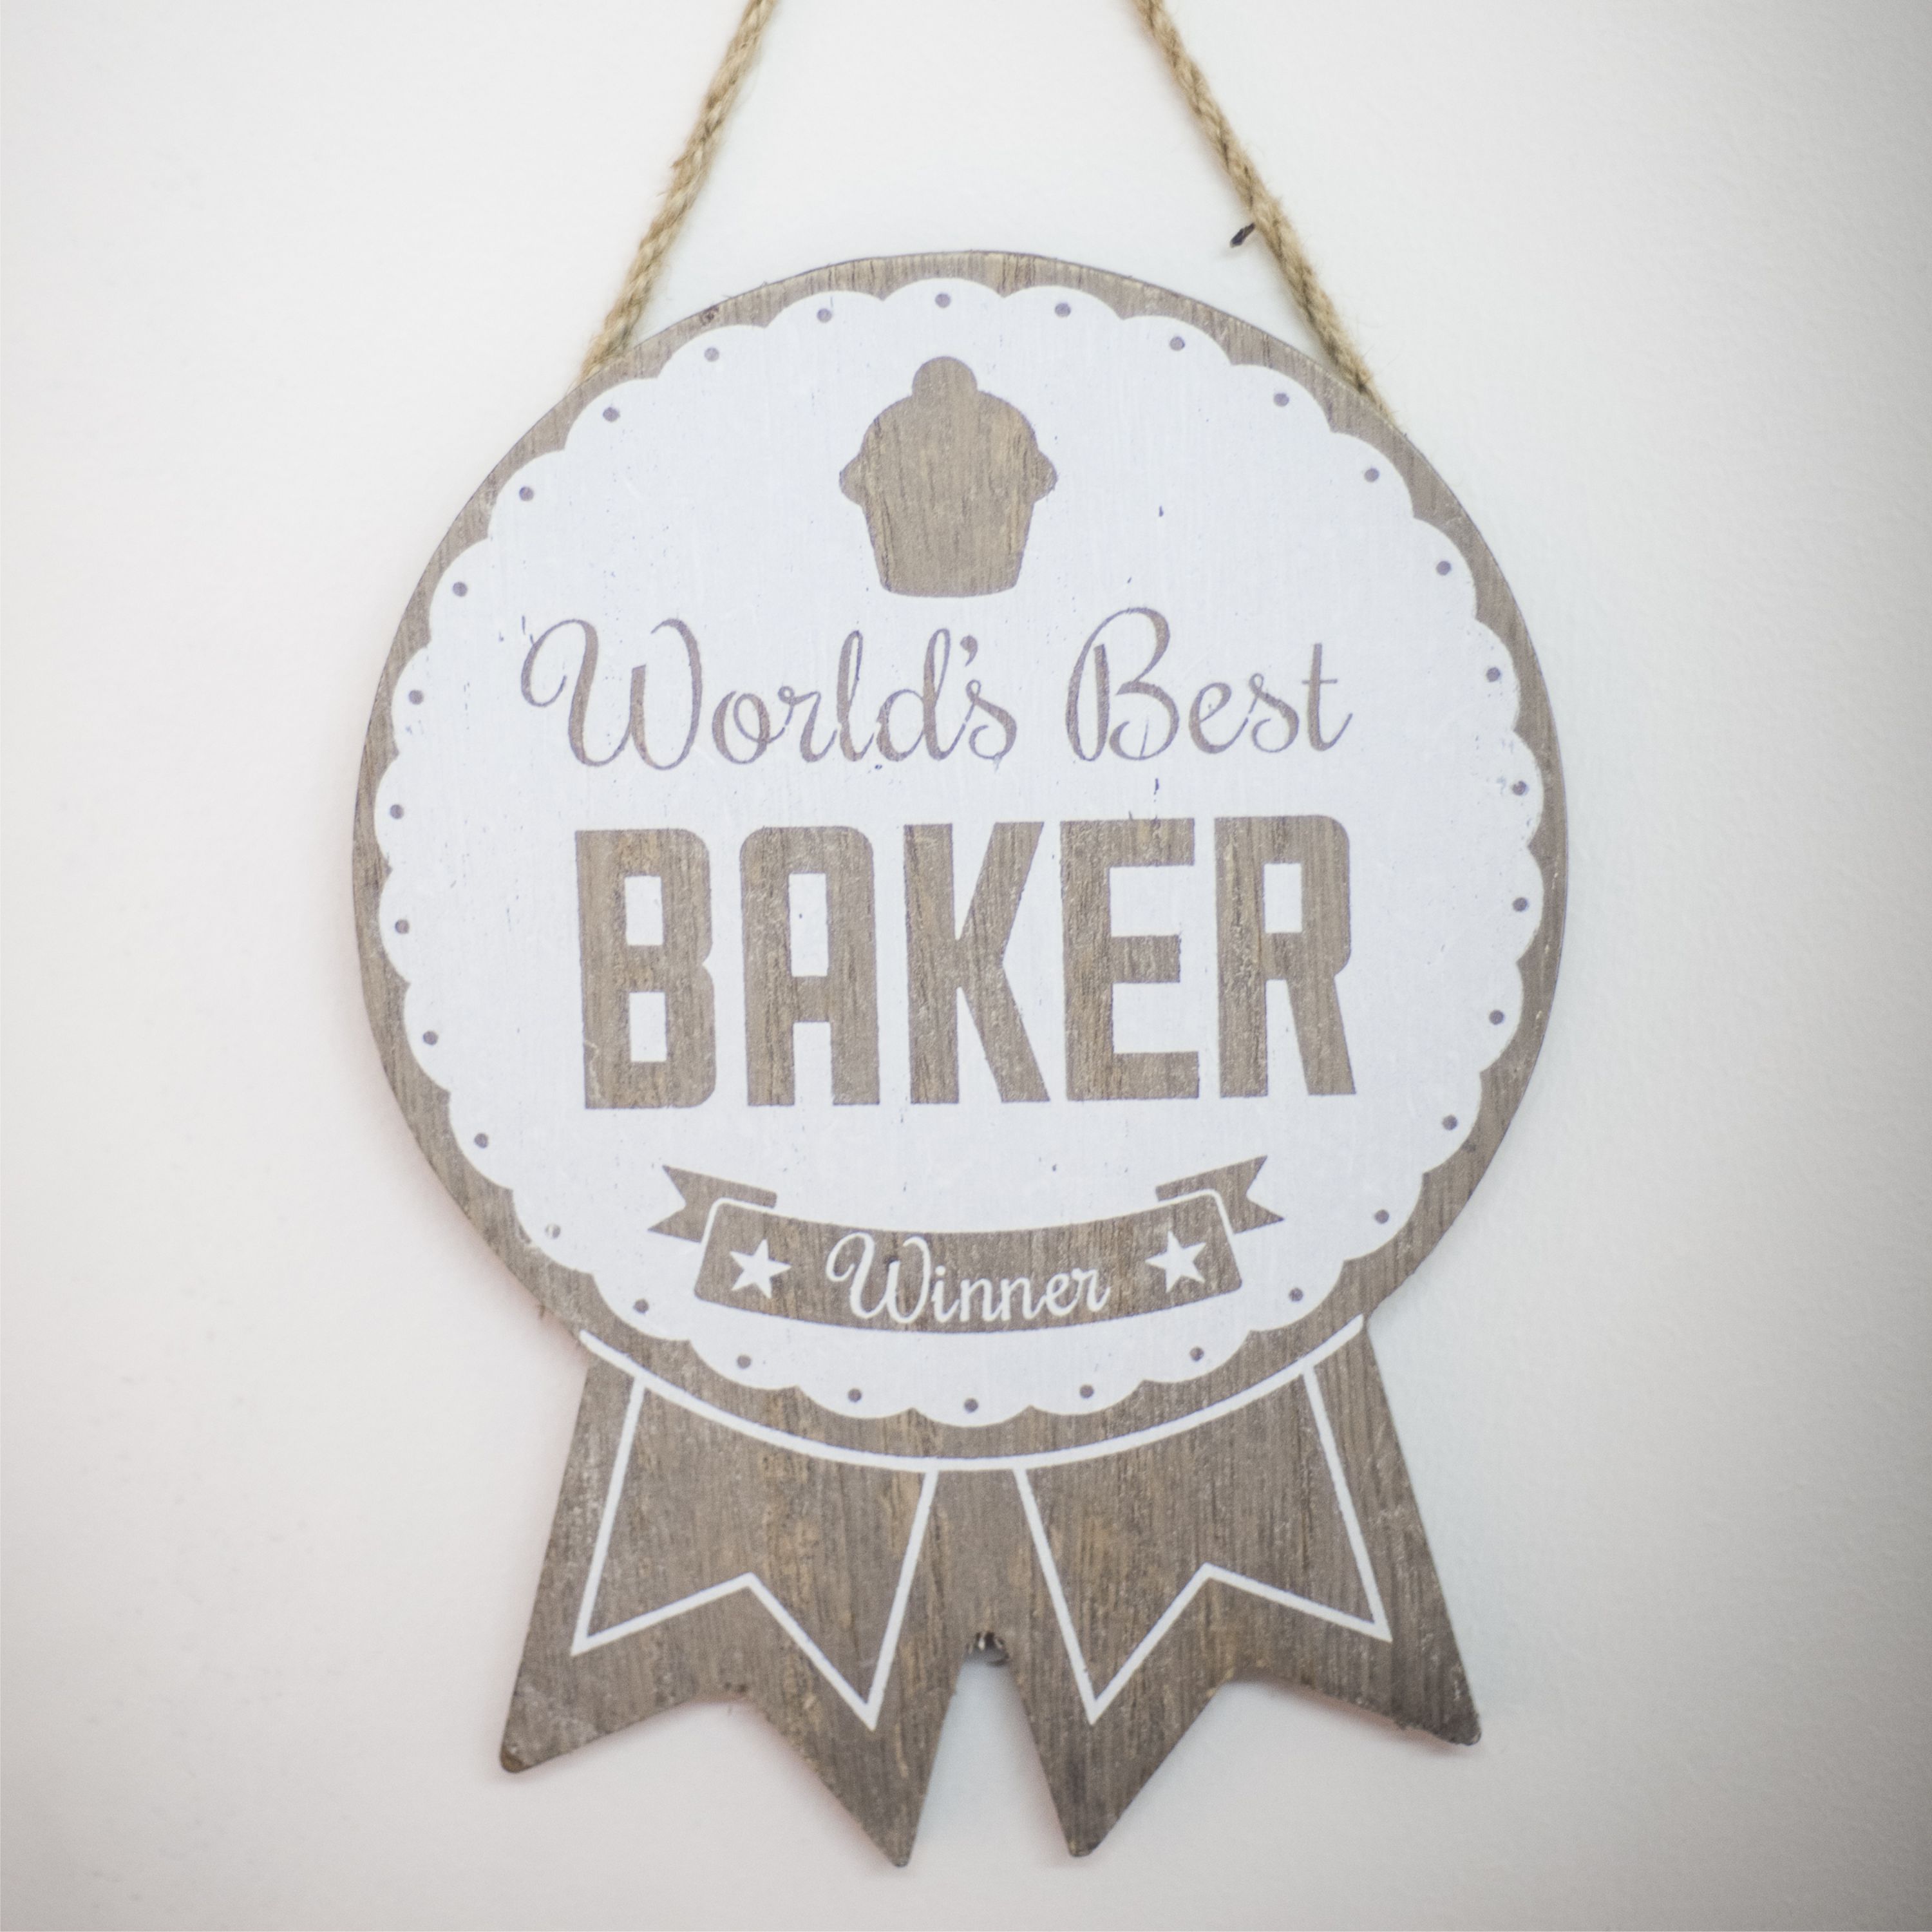 Wooden World’s Best Baker Winner Rosette